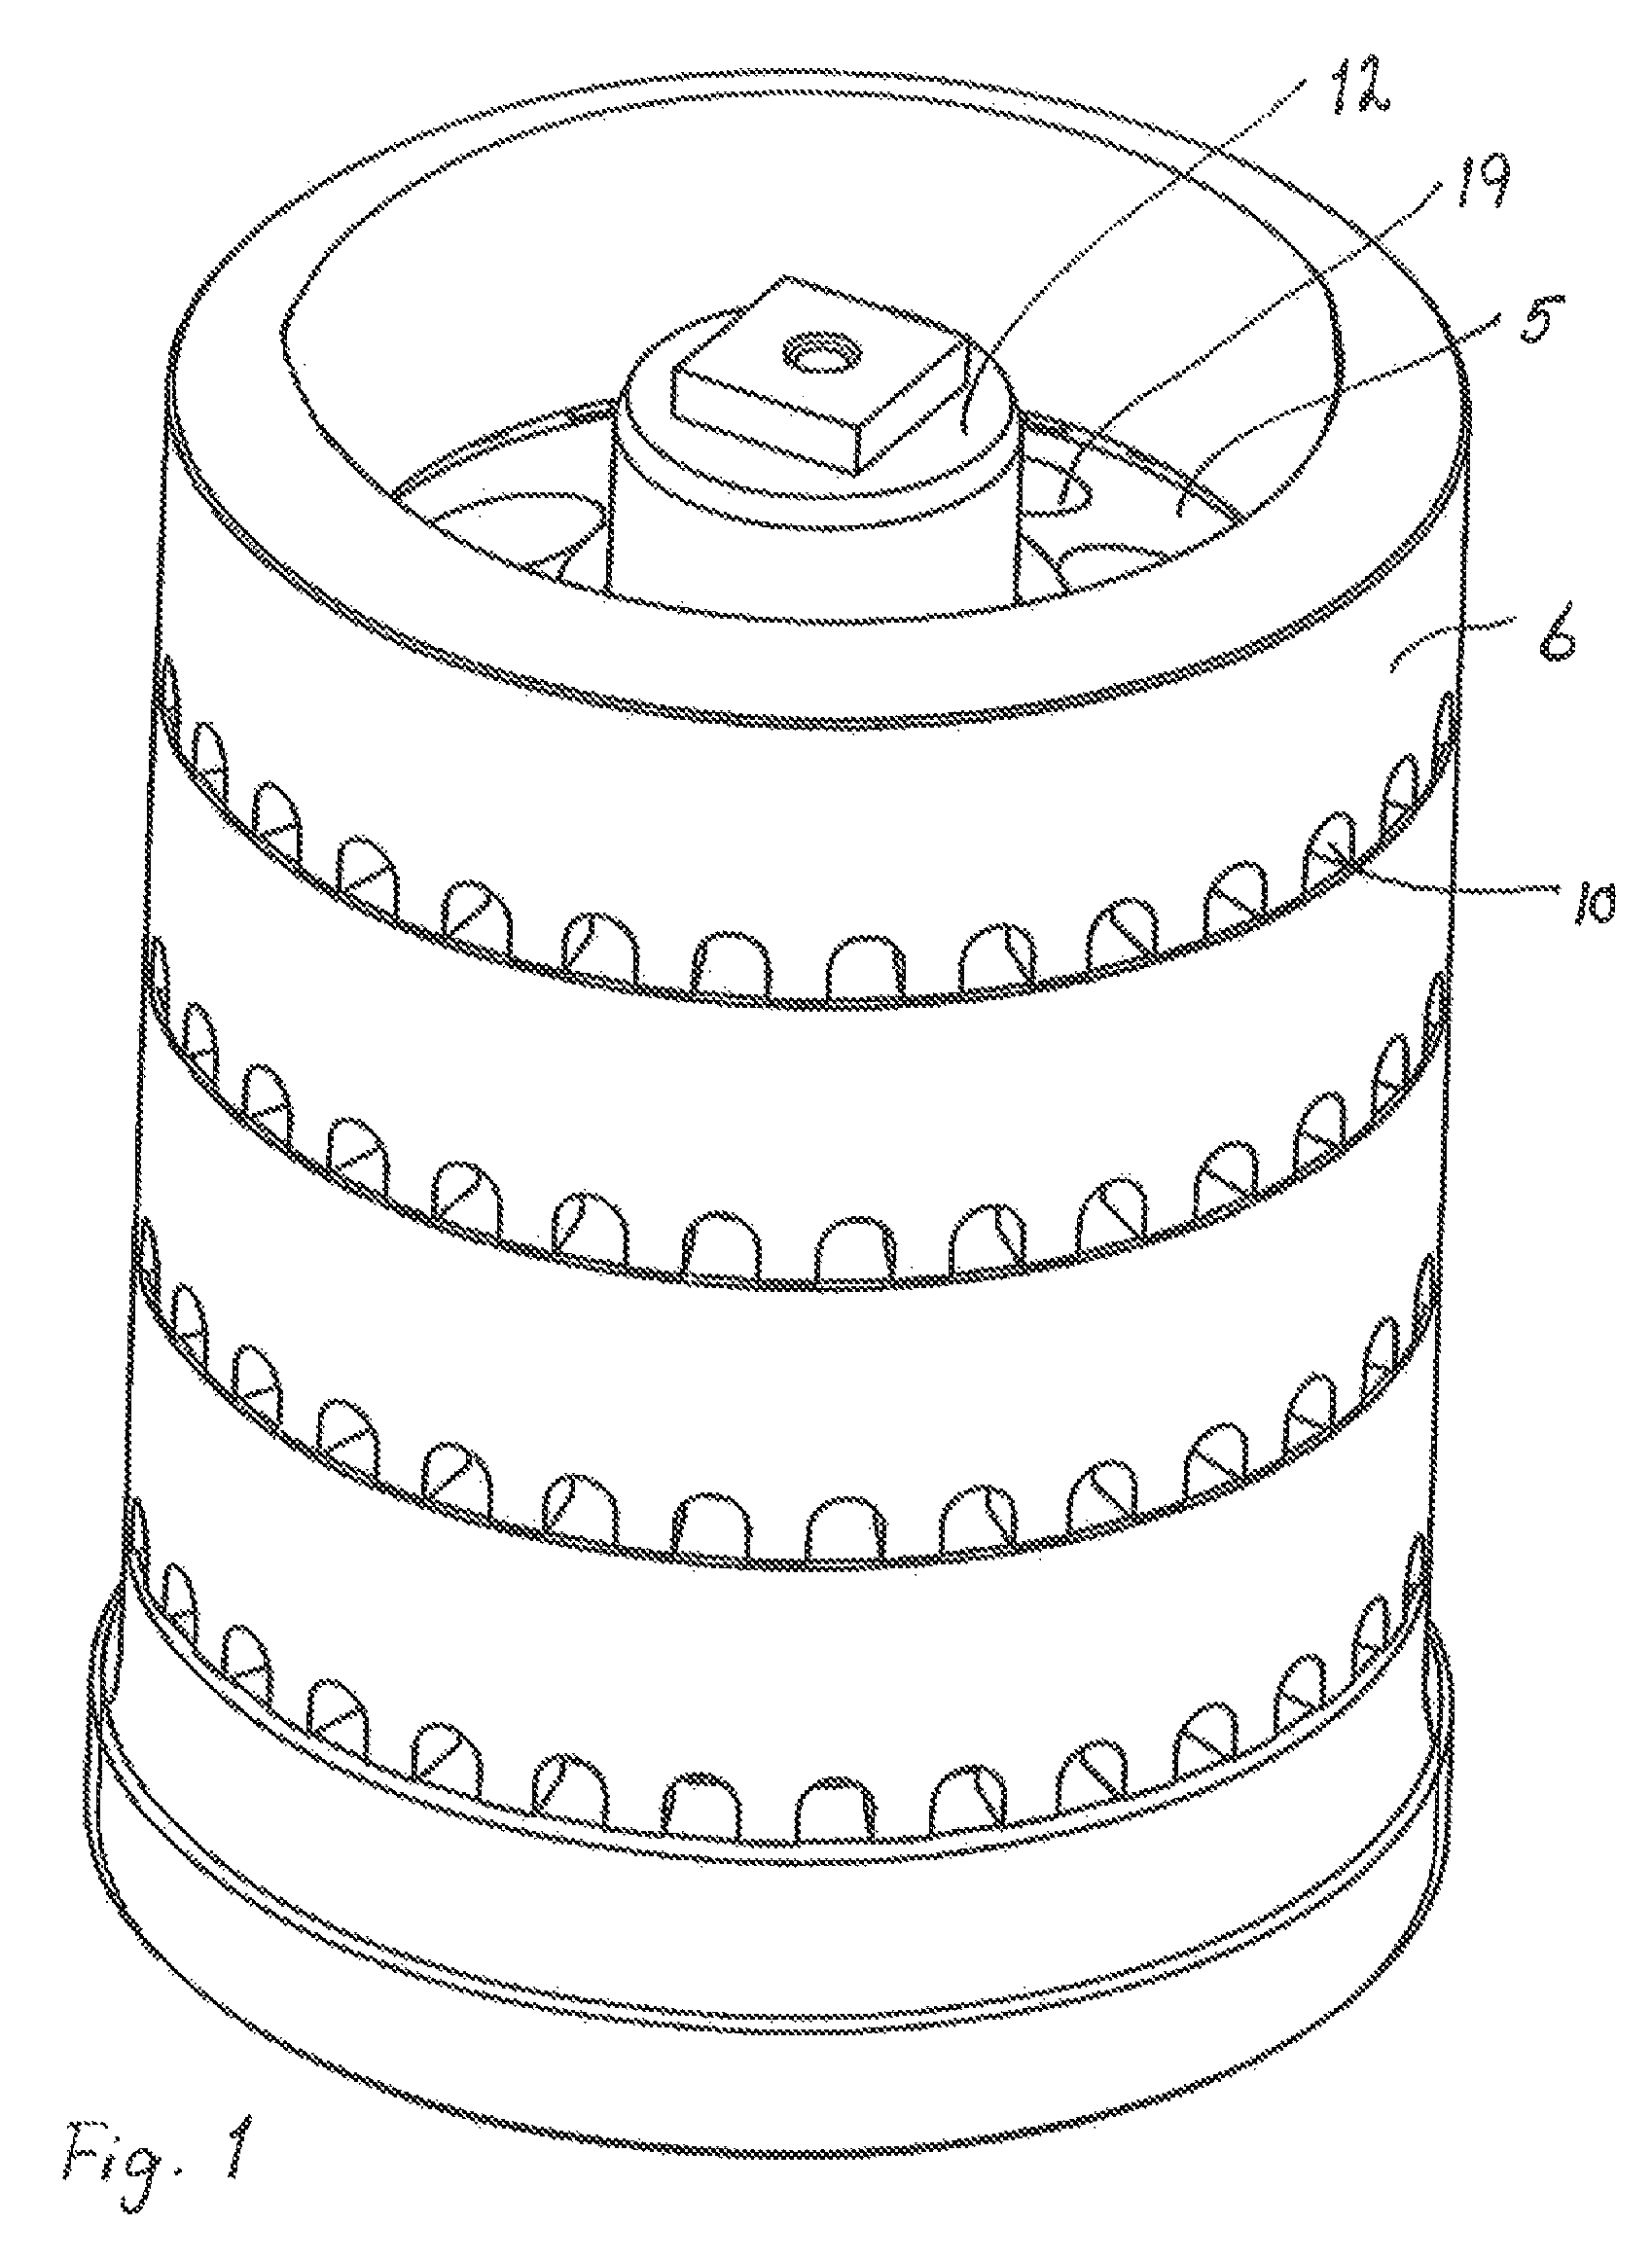 Homogenizing valve having radially and axially arranged gaps